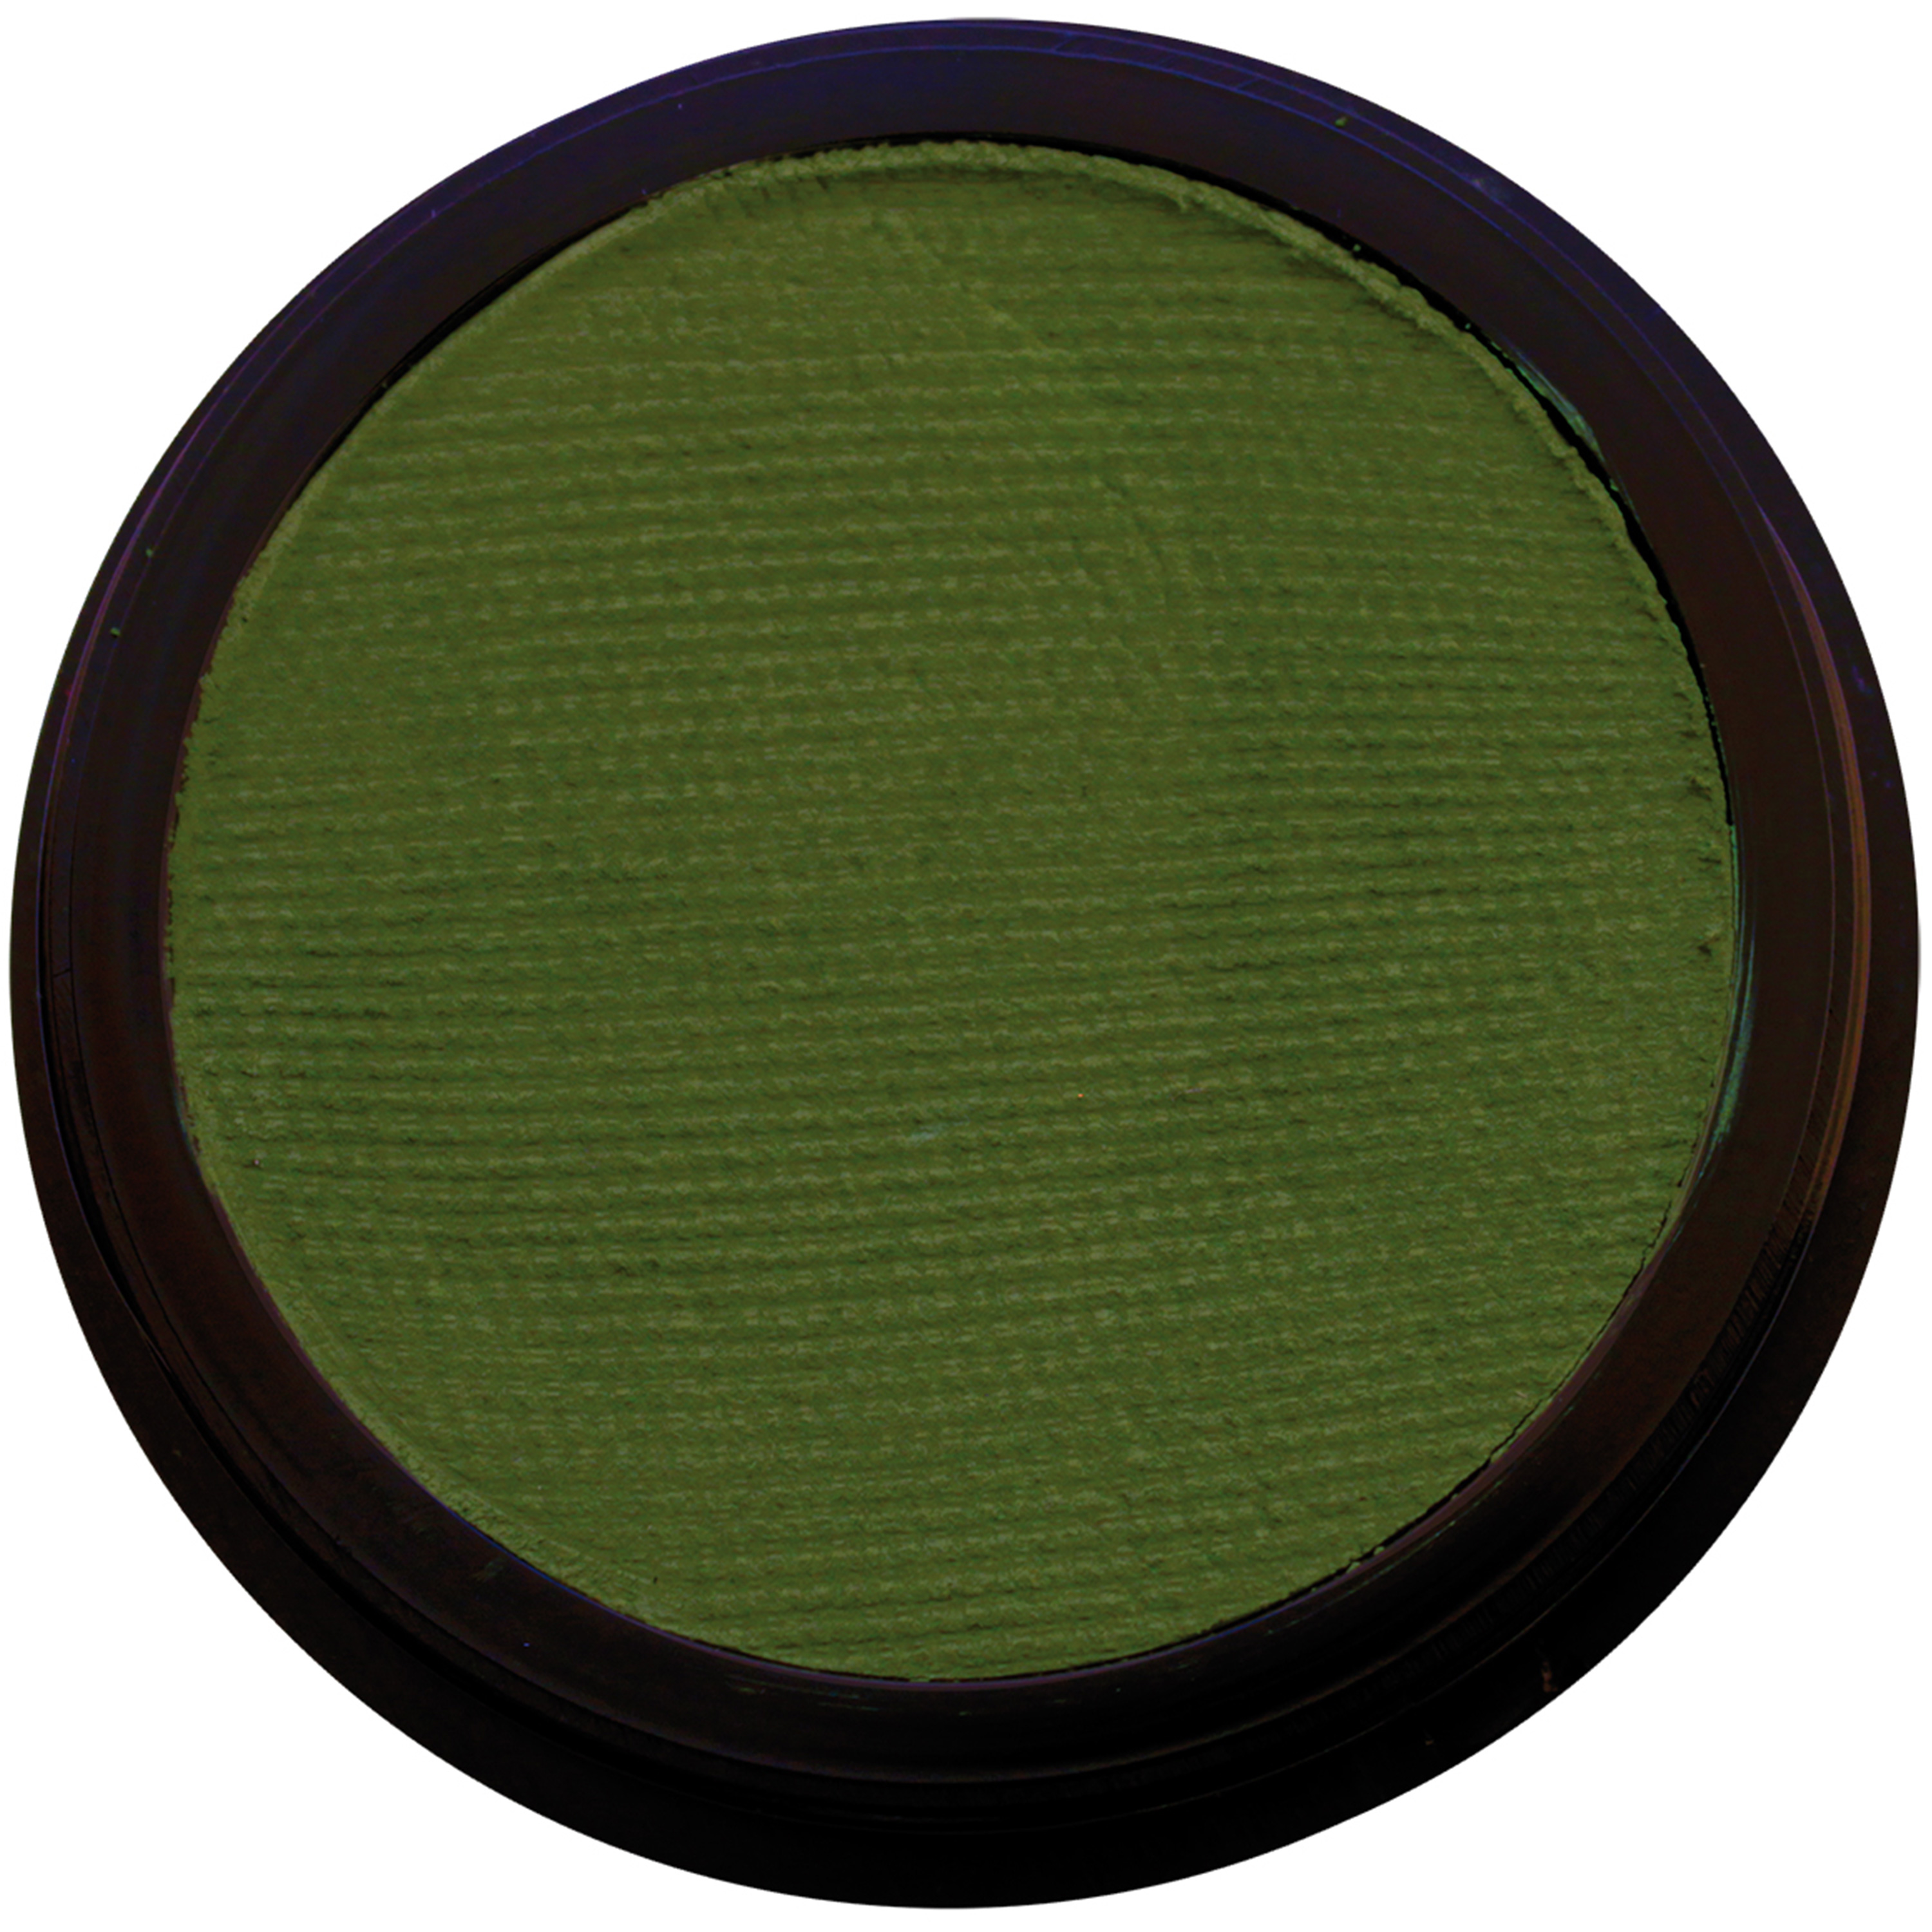 Eulenspiegel 'Profi-Aqua Make-Up', dunkelgrün